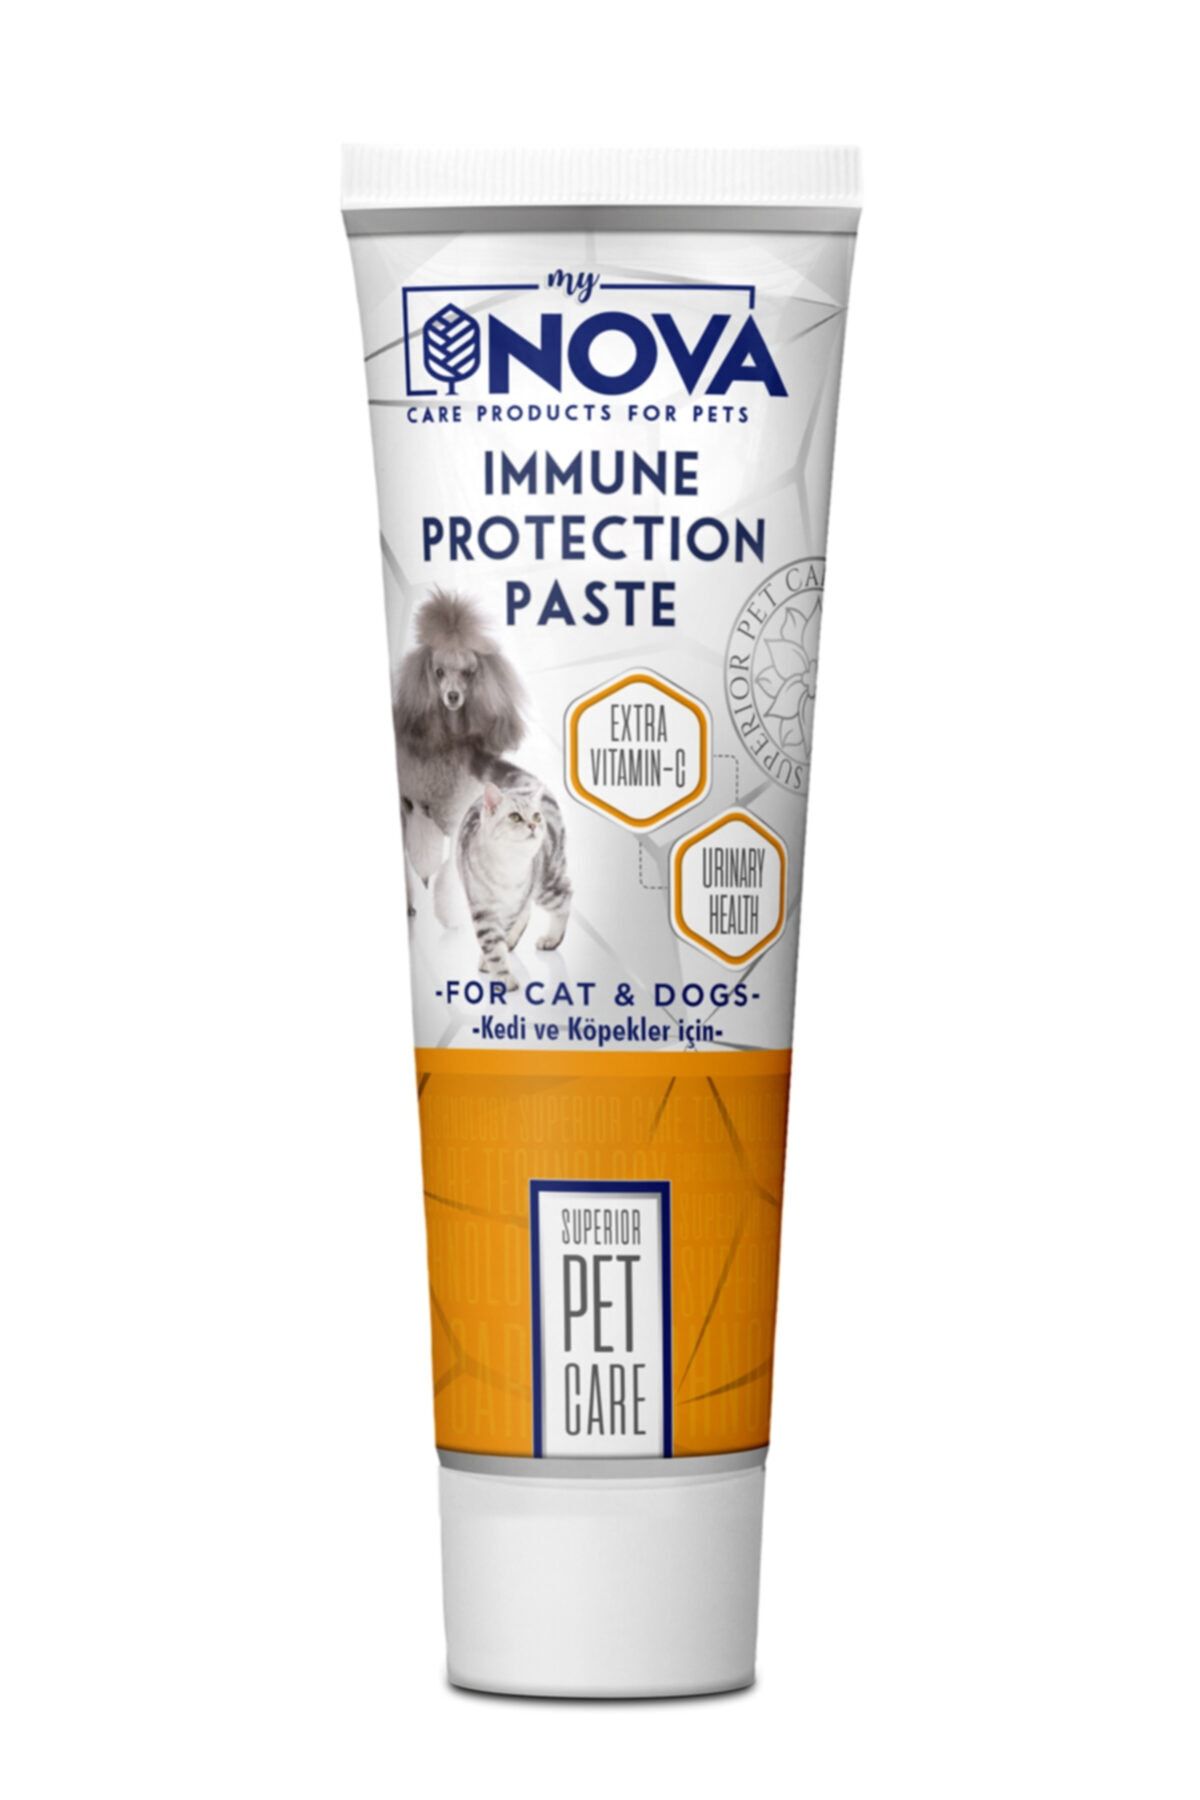 Nova Mydog Immune Protection Kedi Ve Köpekler Için Paste 100gr